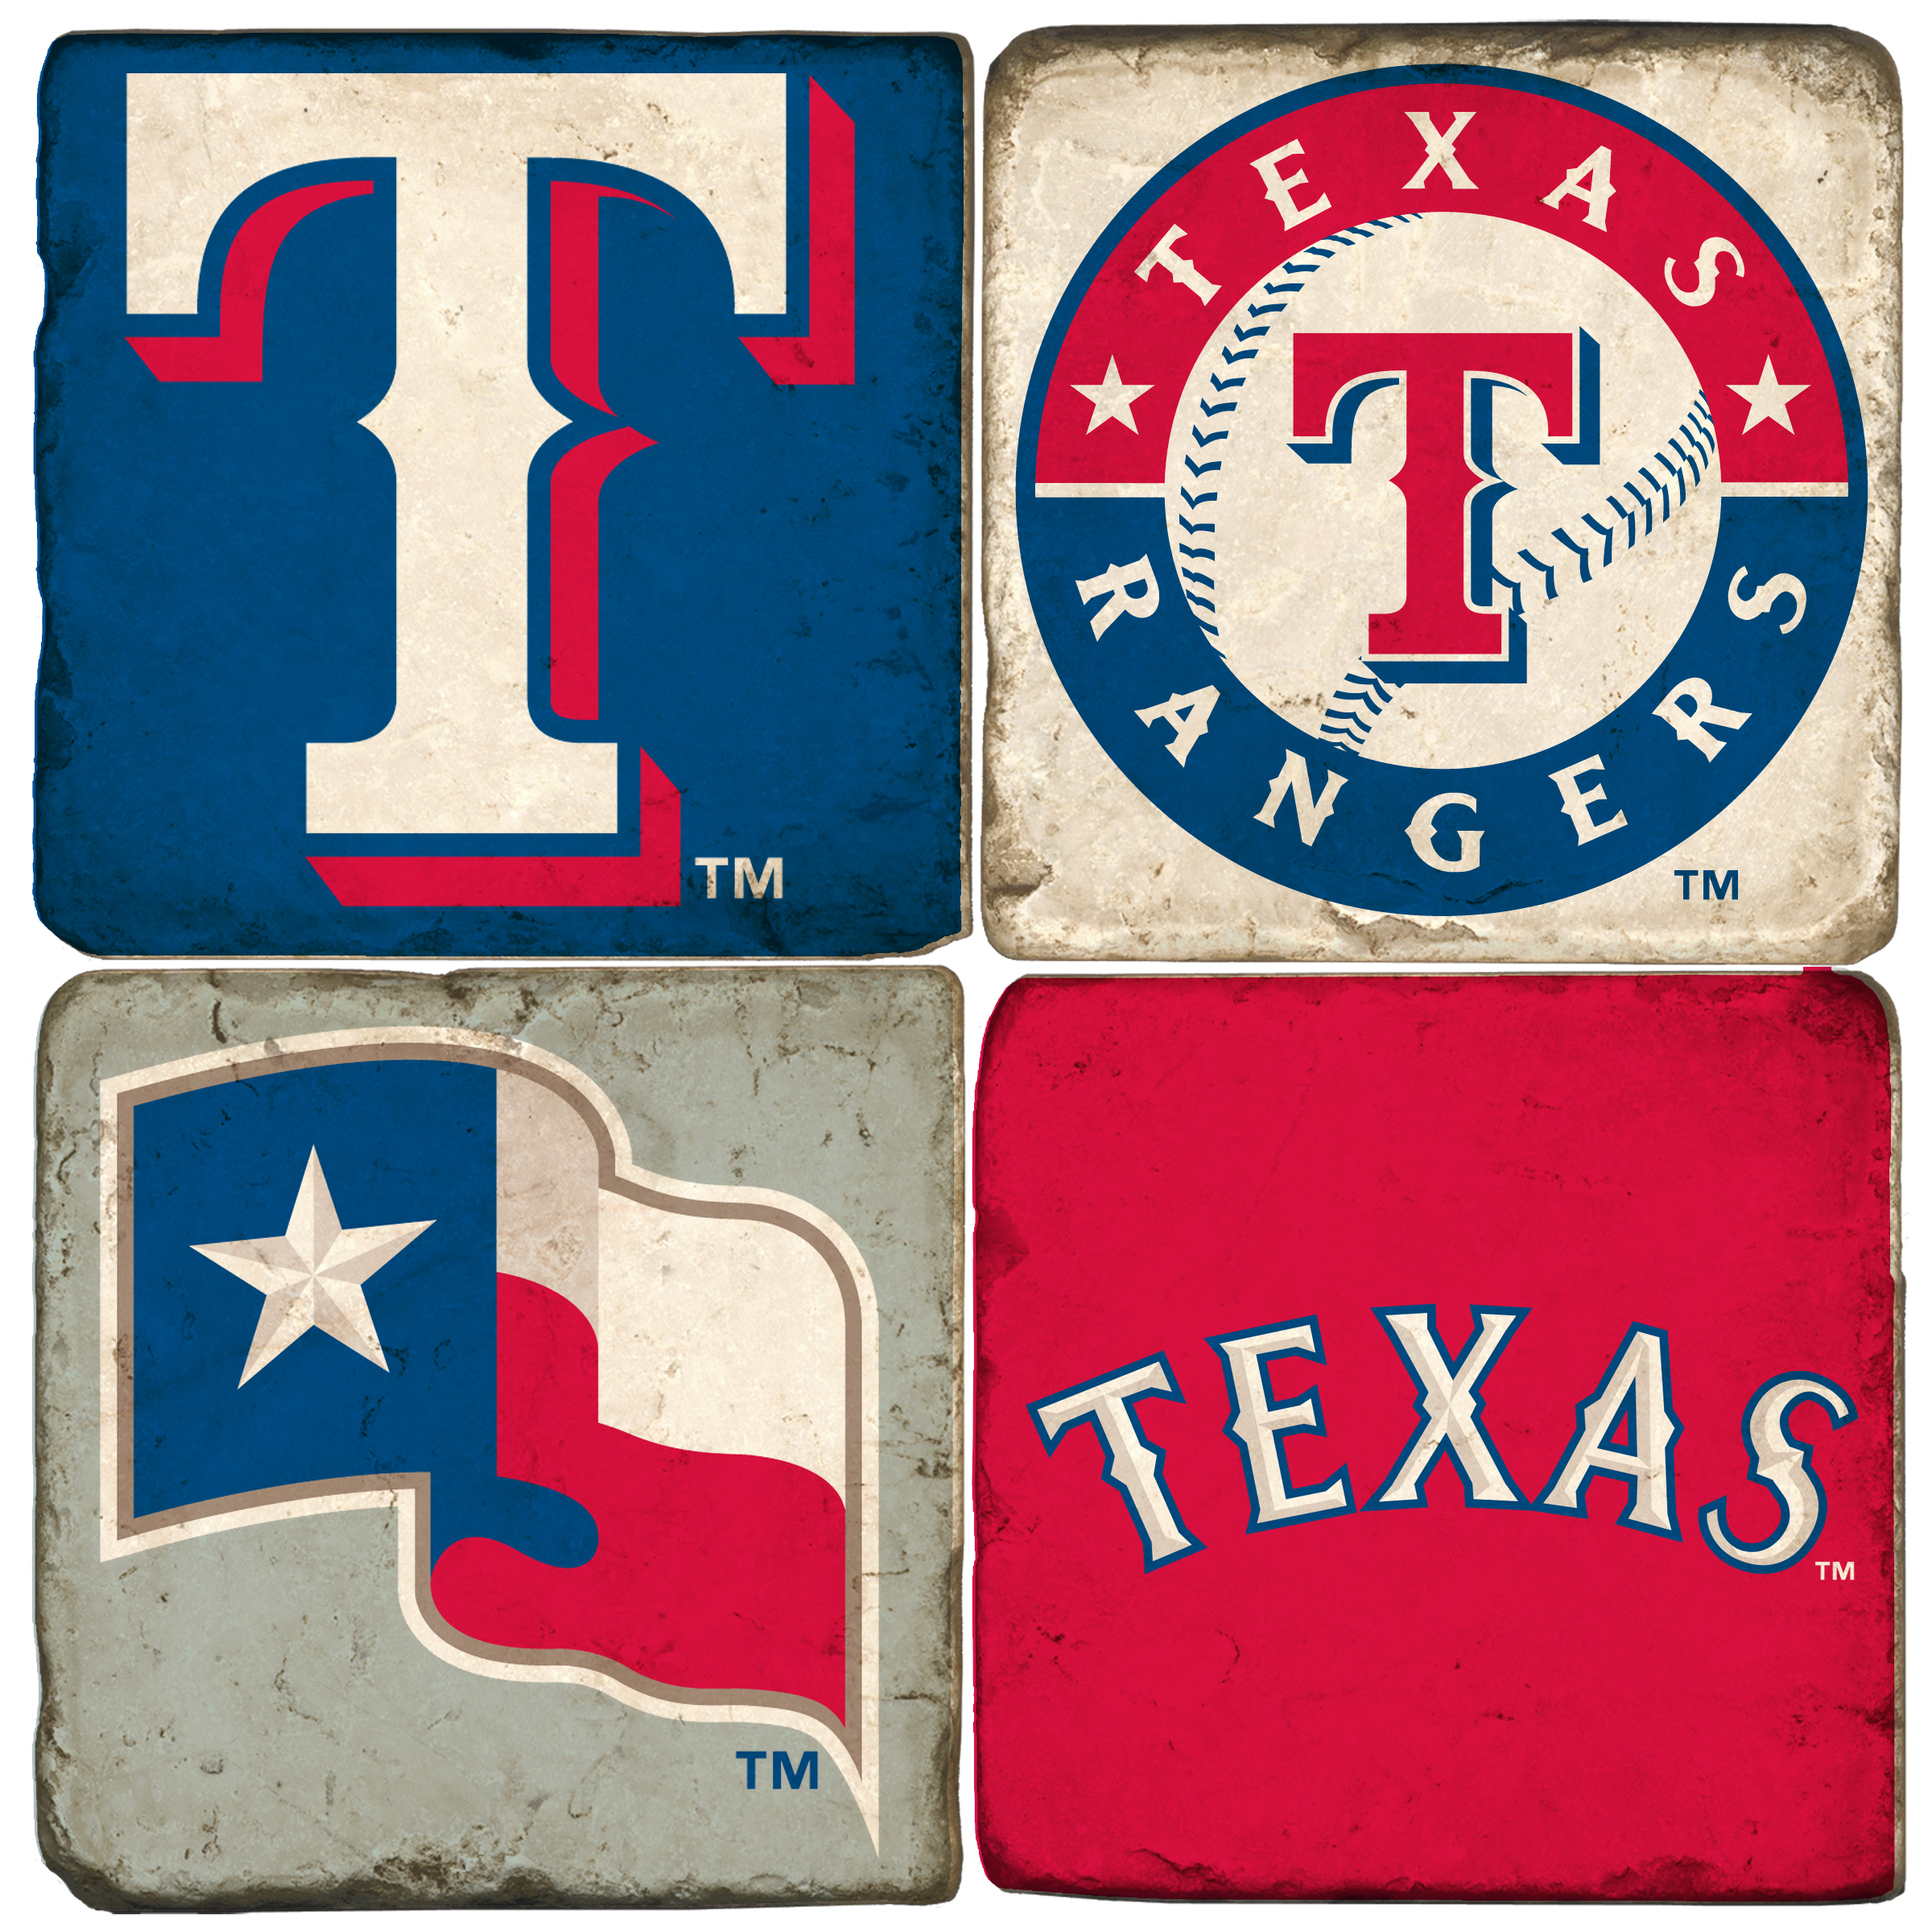 Lovely Texas Rangers Wallpaper | World's Greatest Art Site